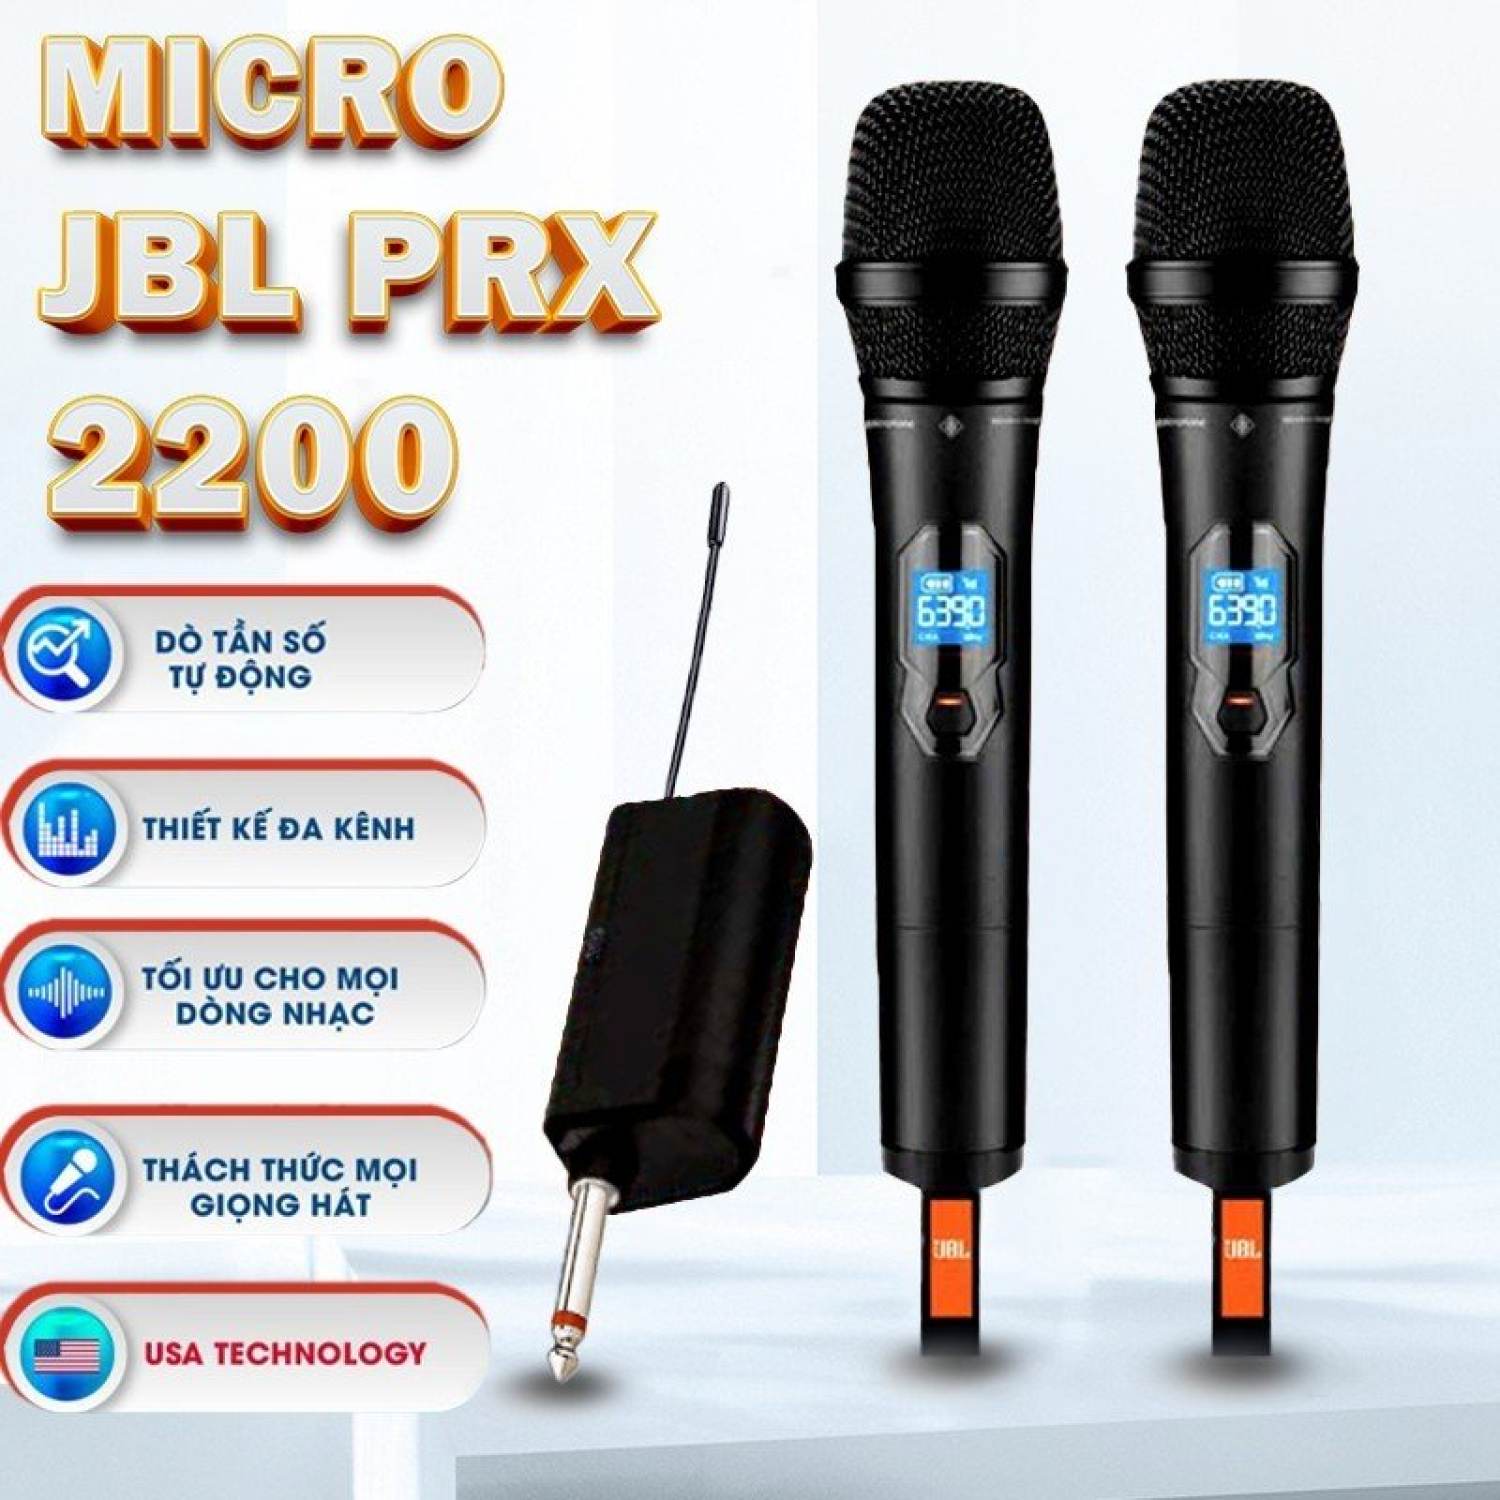 Micro Không Dây JBL Wireless Chuyên Dụng  Mới 2023 | Micro Không Dây Đa Năng JBL PRX 2200 Chính Hãng , Chống Hú Tốt , Công Nghệ UHF, Độ Nhạy Cao, Hát Cực Nhẹ, Bắt Âm Cực Chuẩn, Dễ Dàng Phối Ghép Với Nhiều Thiết Bị